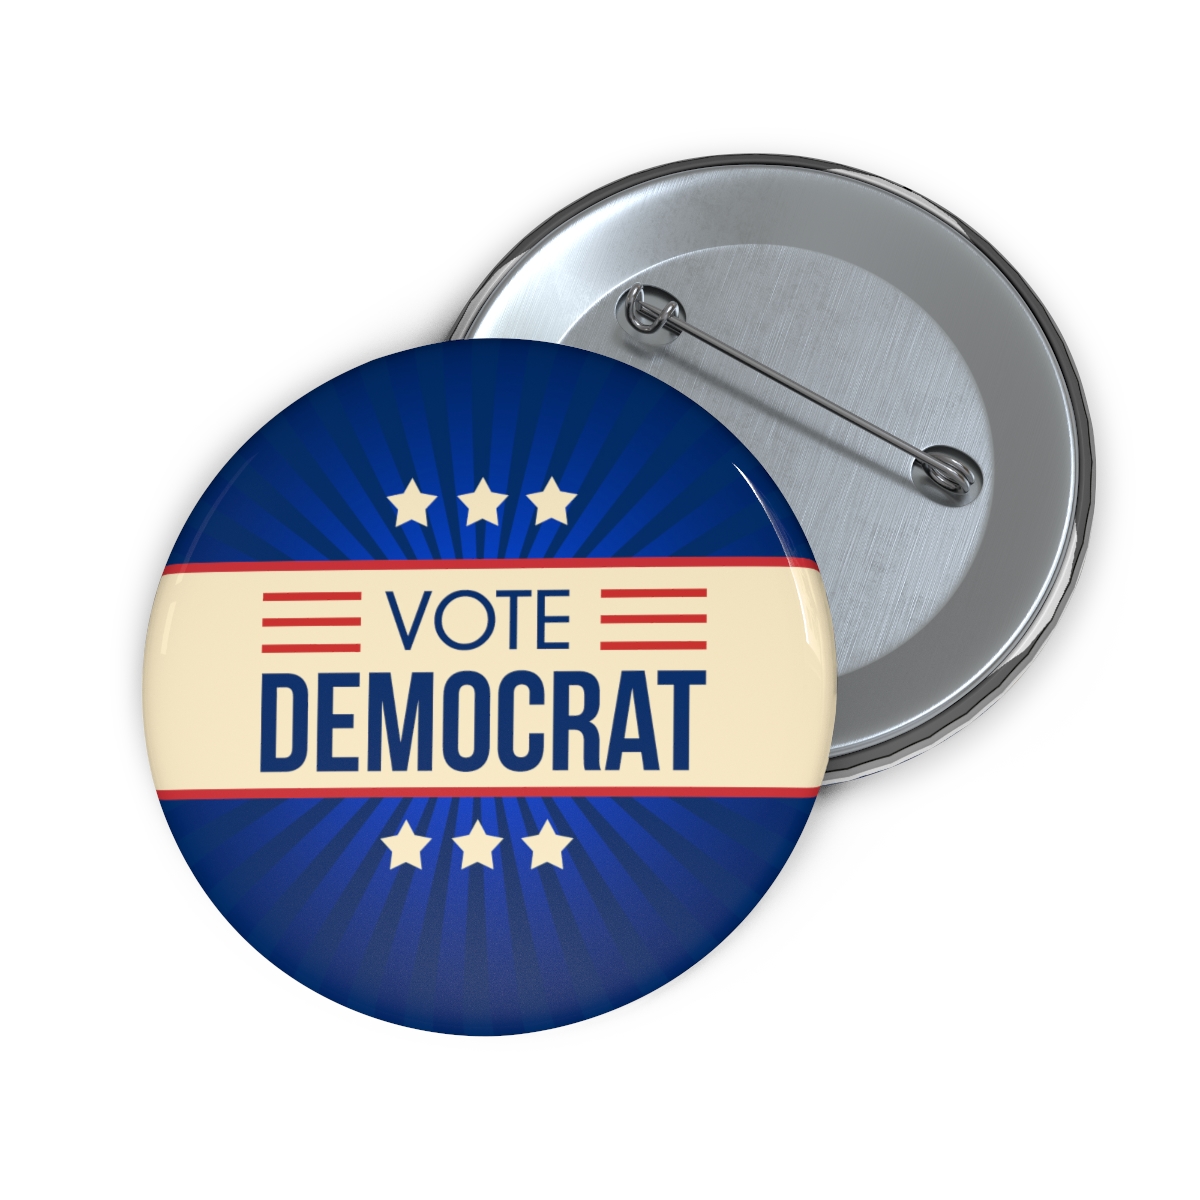 Democrat Campaign Button